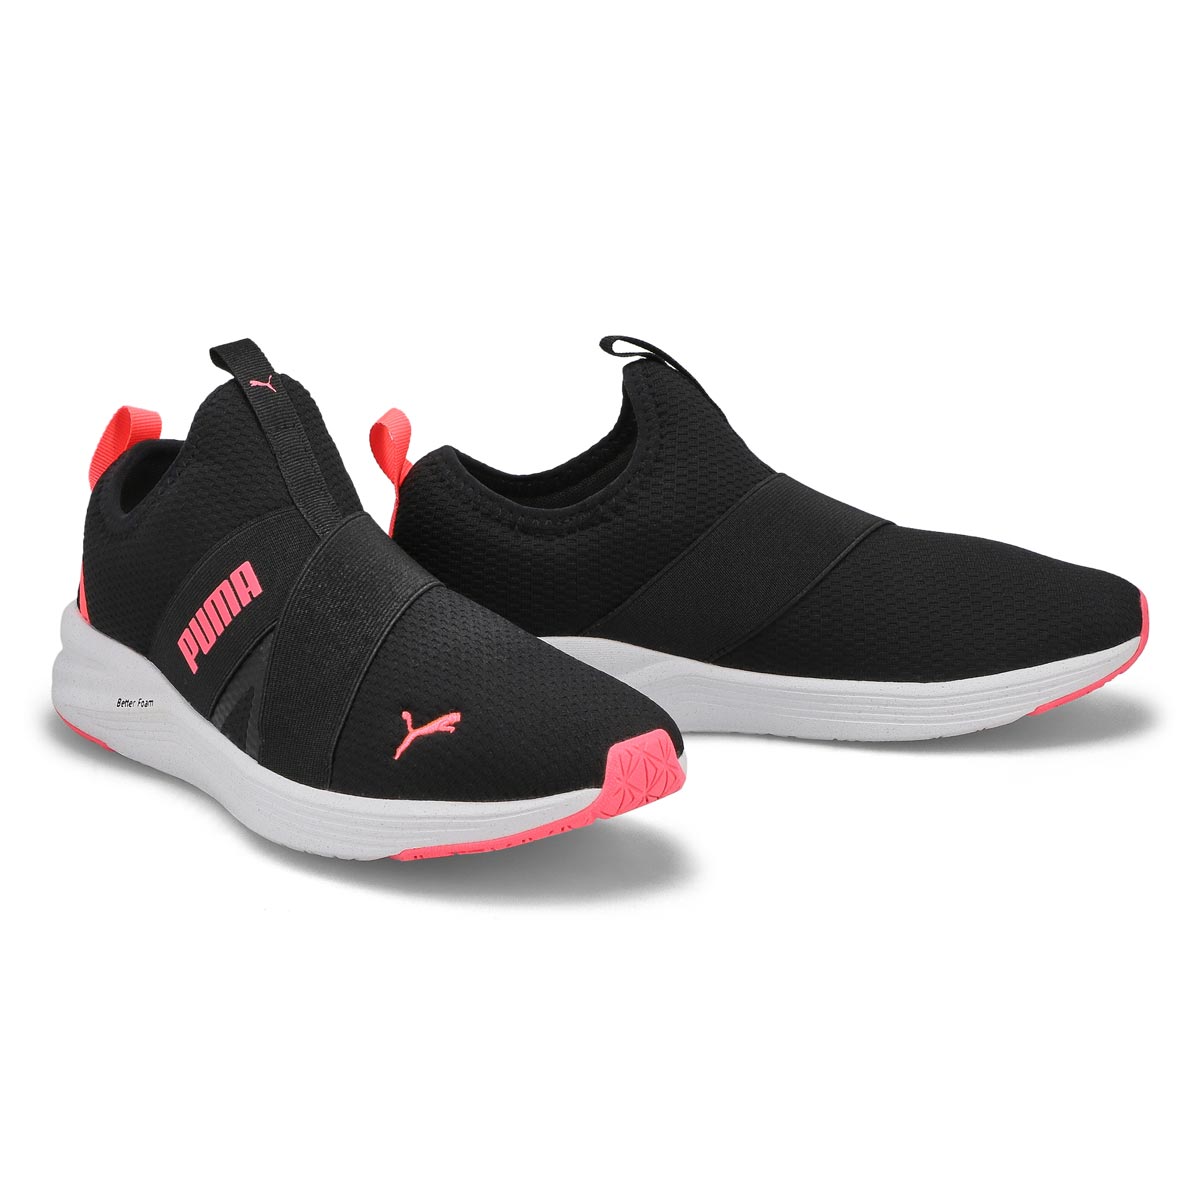 Women's Better Foam Prowl Slip On Sneaker - Black/Pink